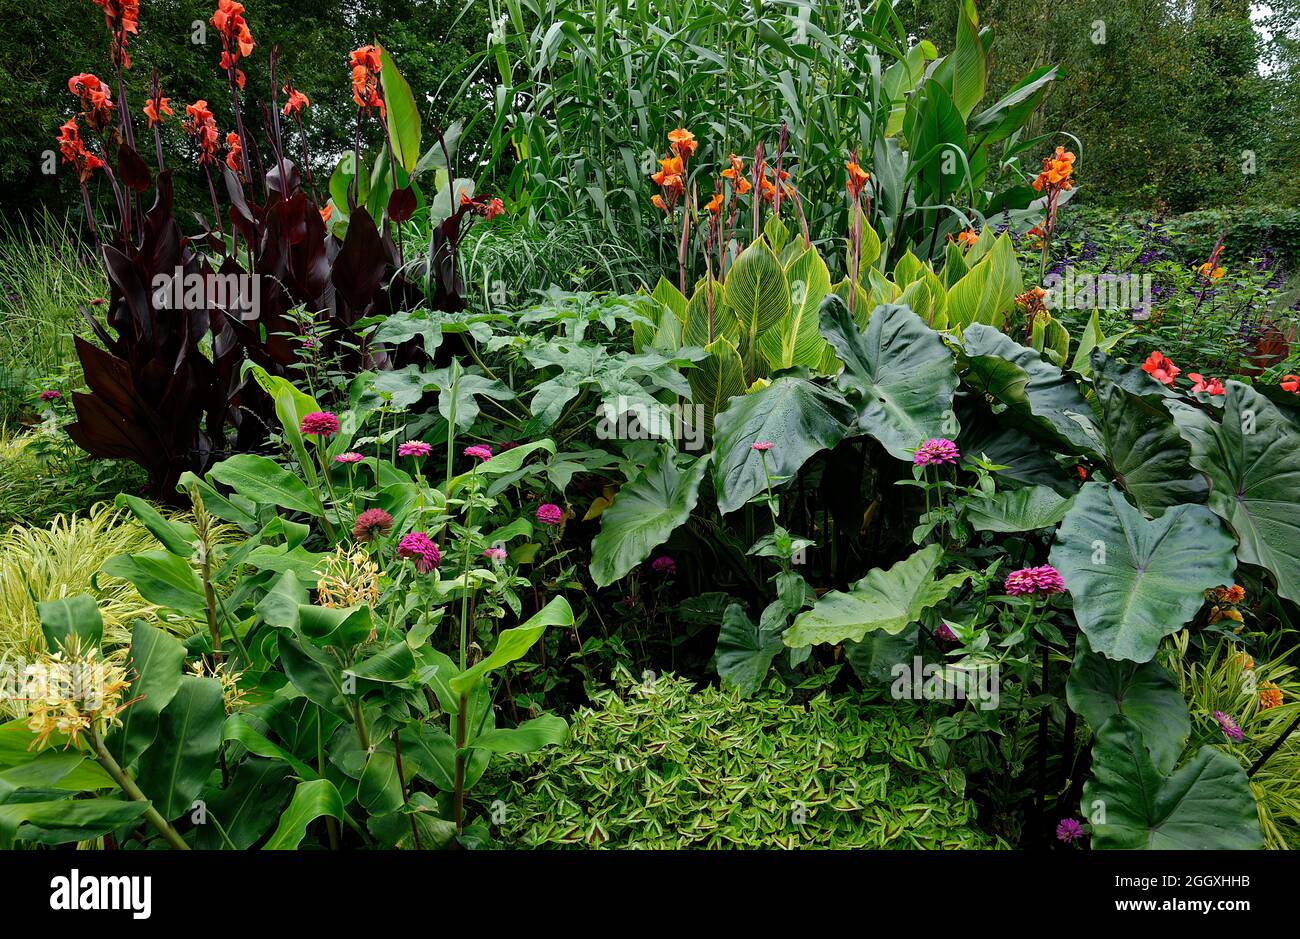 Subtropische Gartenpflanzen in einer nicht tropischen Umgebung. Hardy exotische Pflanzen wachsen in England. Stockfoto